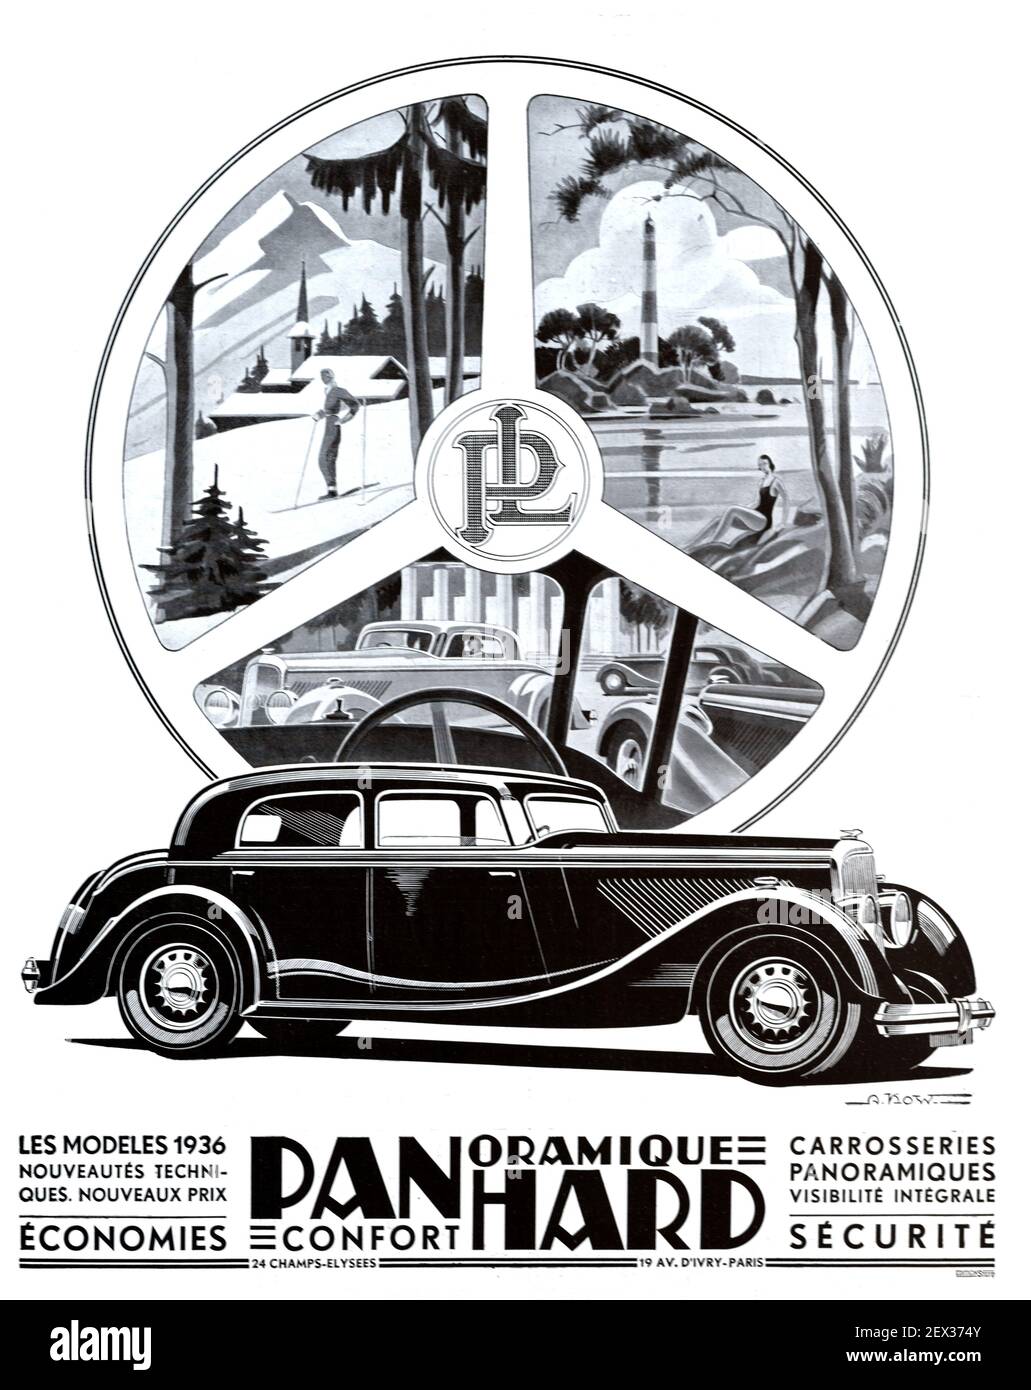 Vintage-Werbung, Werbung oder Werbung für ein Vintage Panhard Dynamic Range Auto, Automobil oder Motorcar 1935 Illustration zeigt Panhard Car und Touristische Bilder von Mountain & Sea View umrahmt von einem Lenkrad Stockfoto